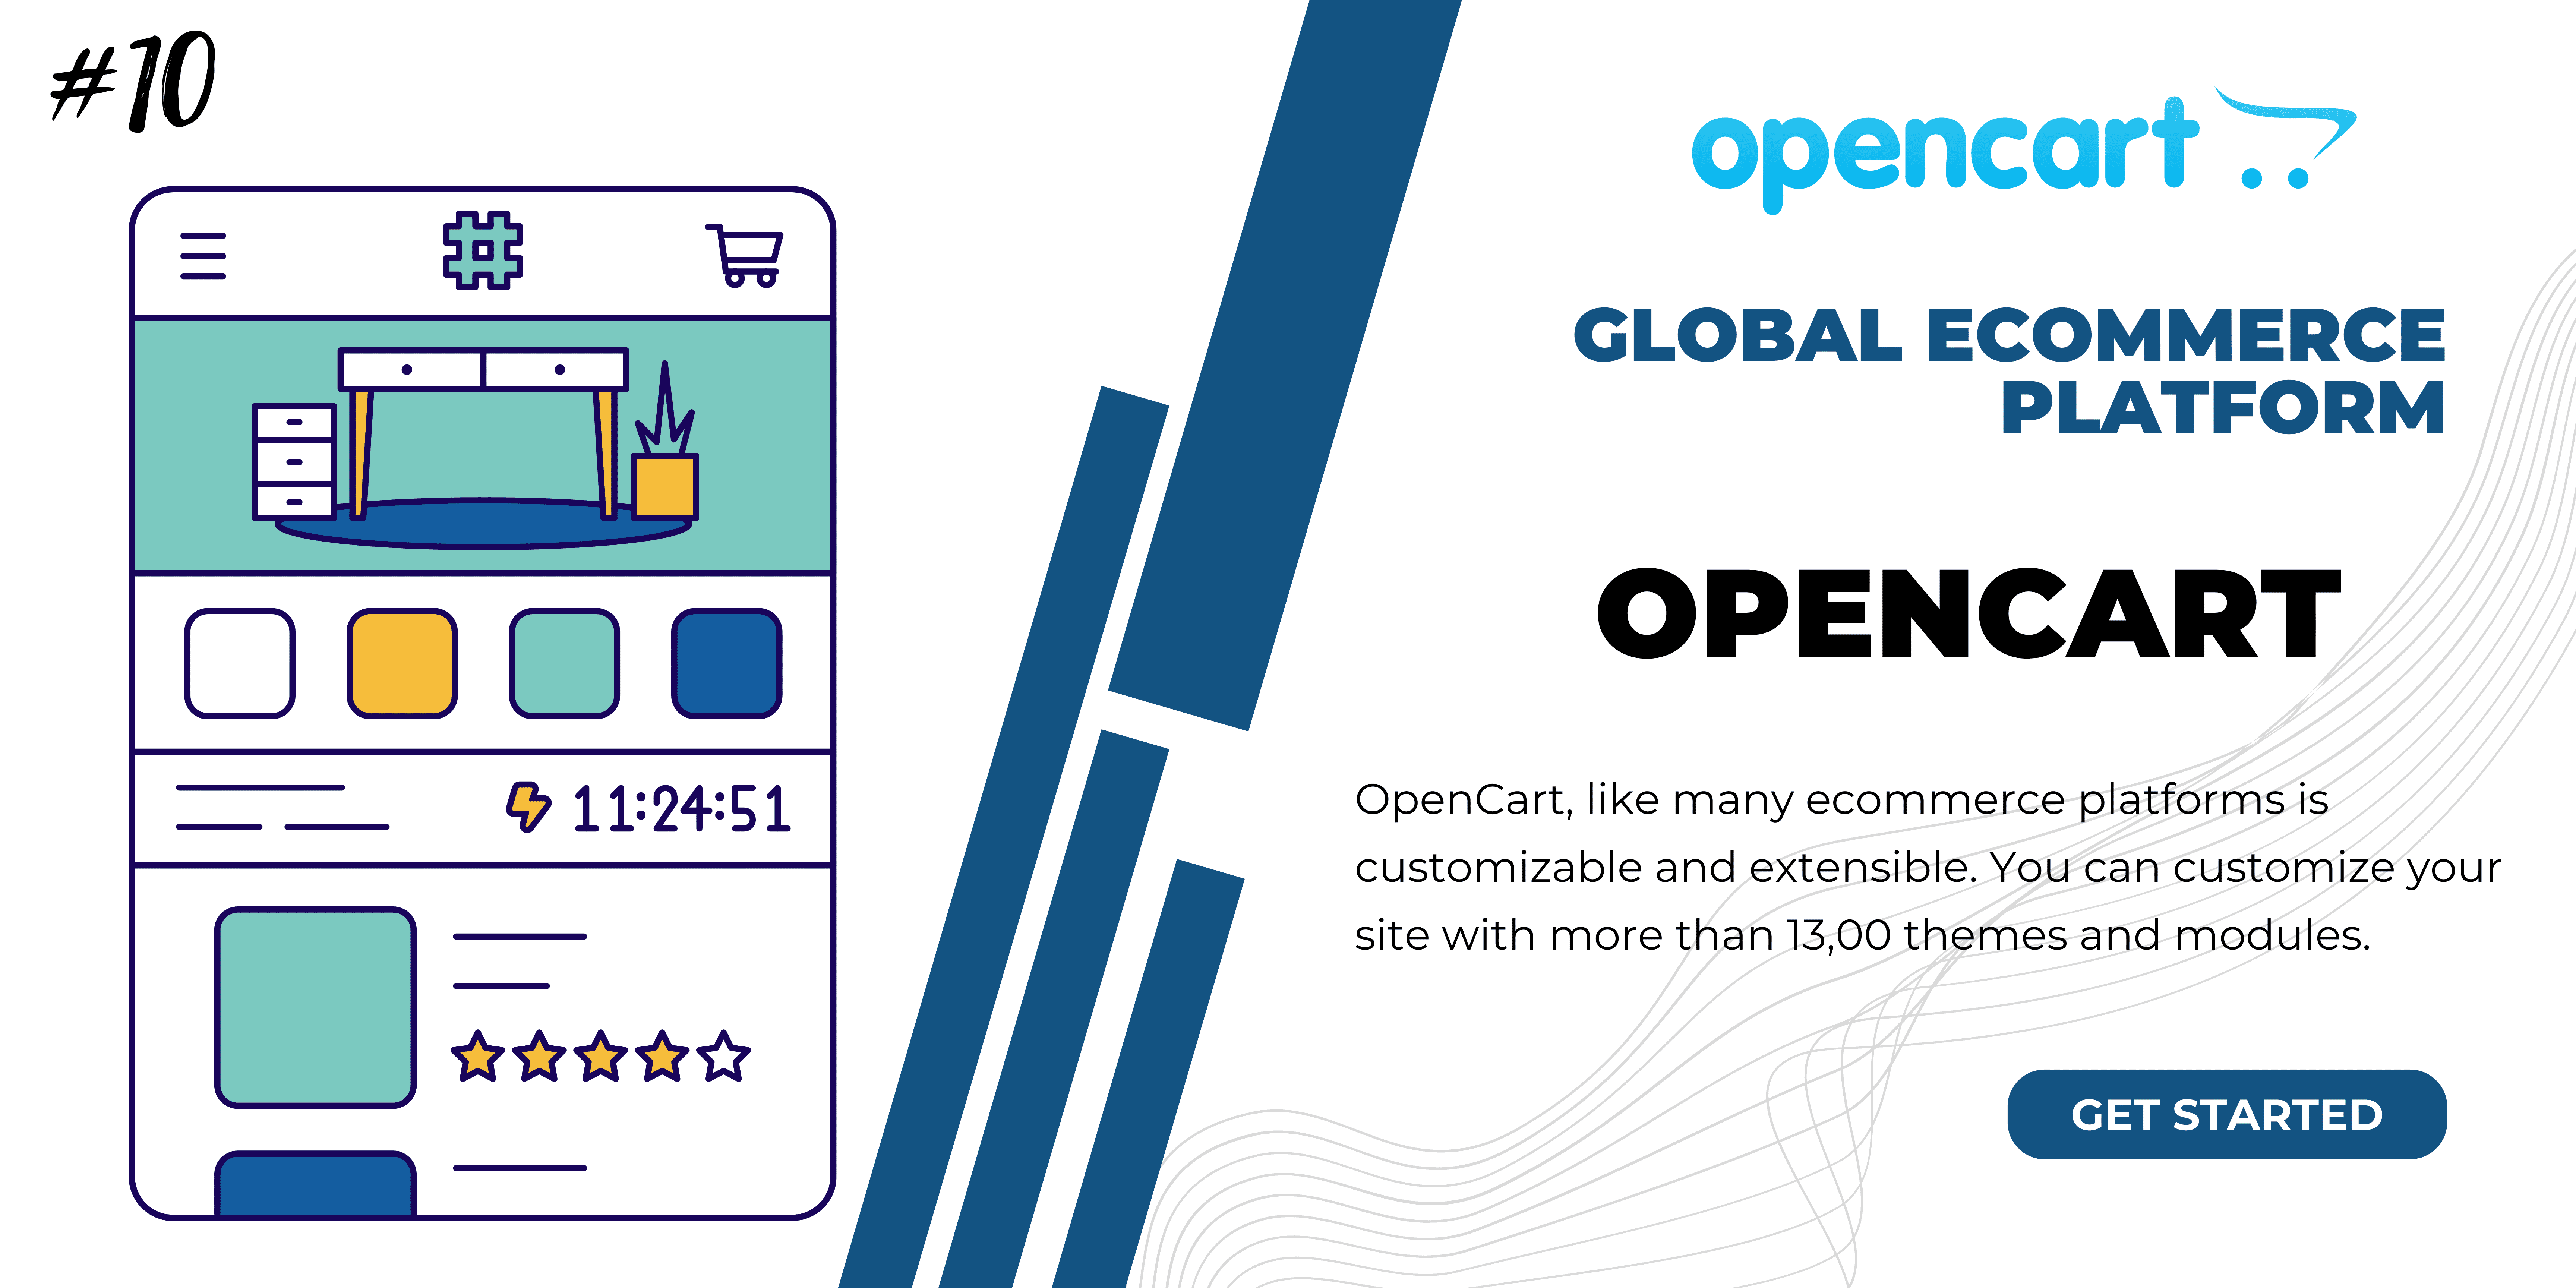 OpenCart - Open-source eCommerce Platform